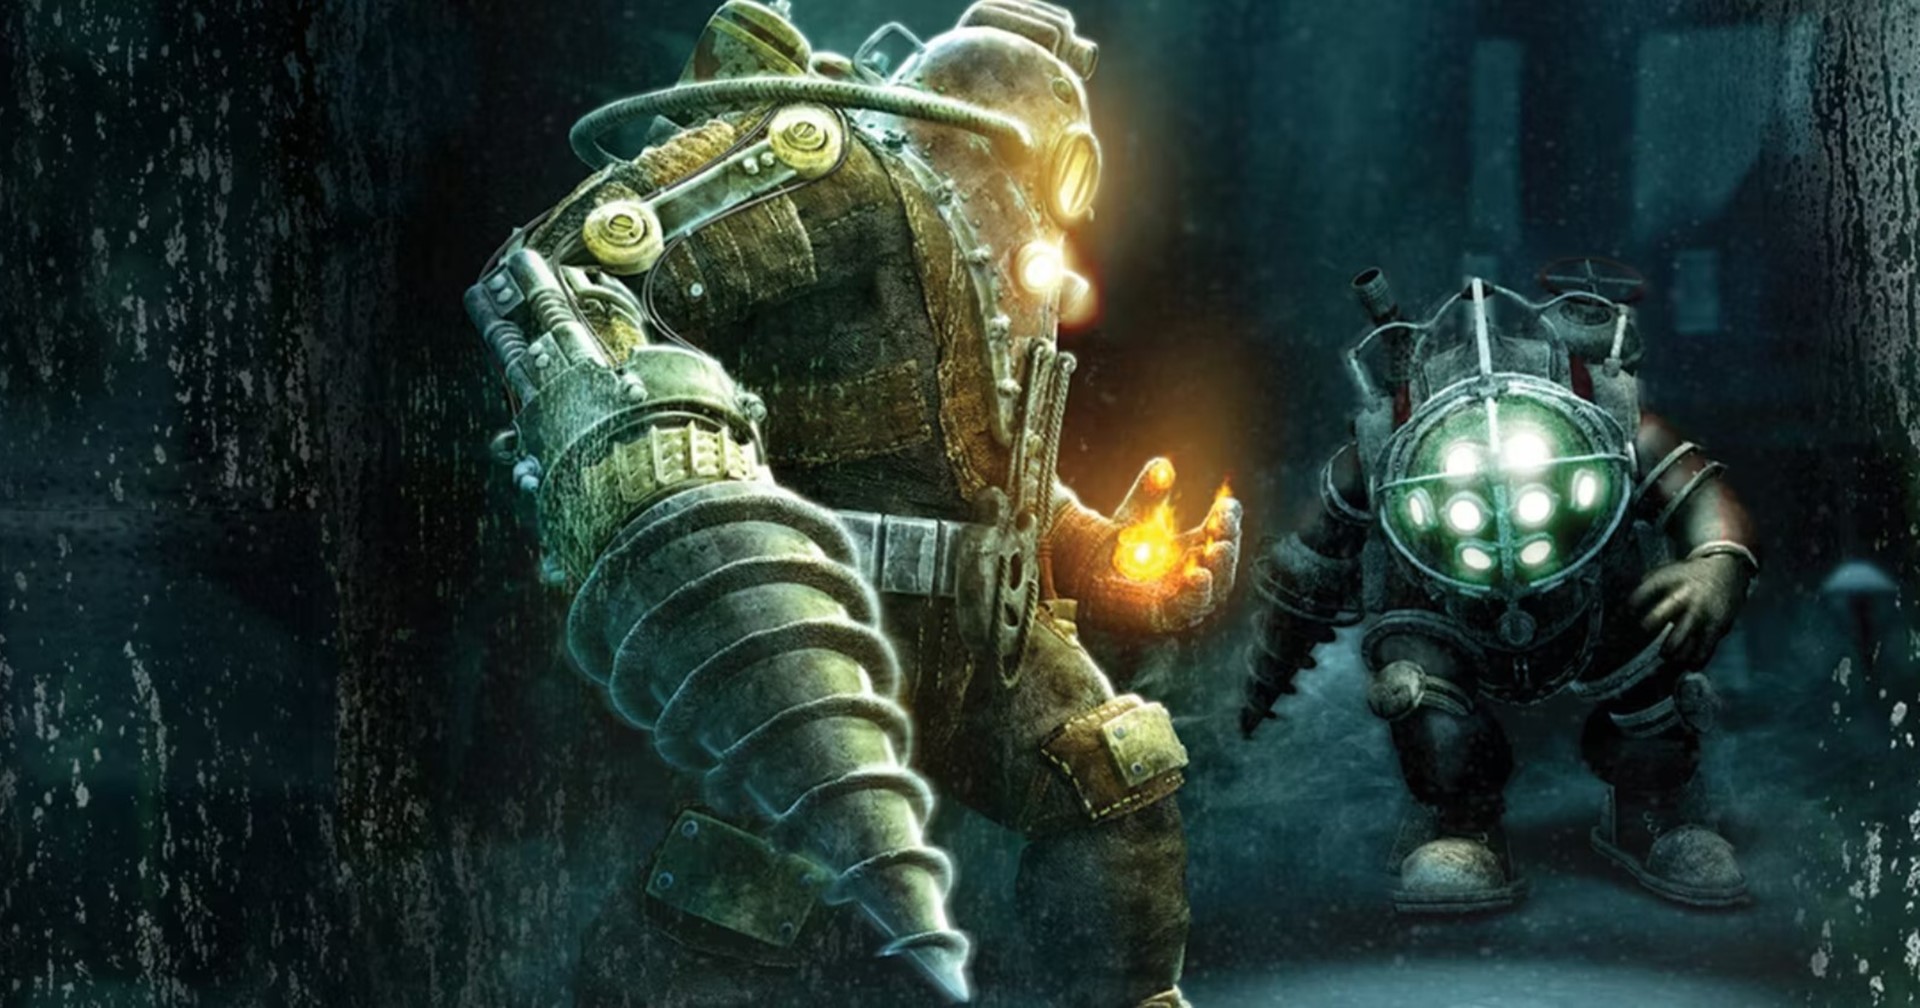 ทีมสร้าง Far Cry 5 บอกเกม BioShock ภาคต่ออยู่ในระหว่างการสร้าง